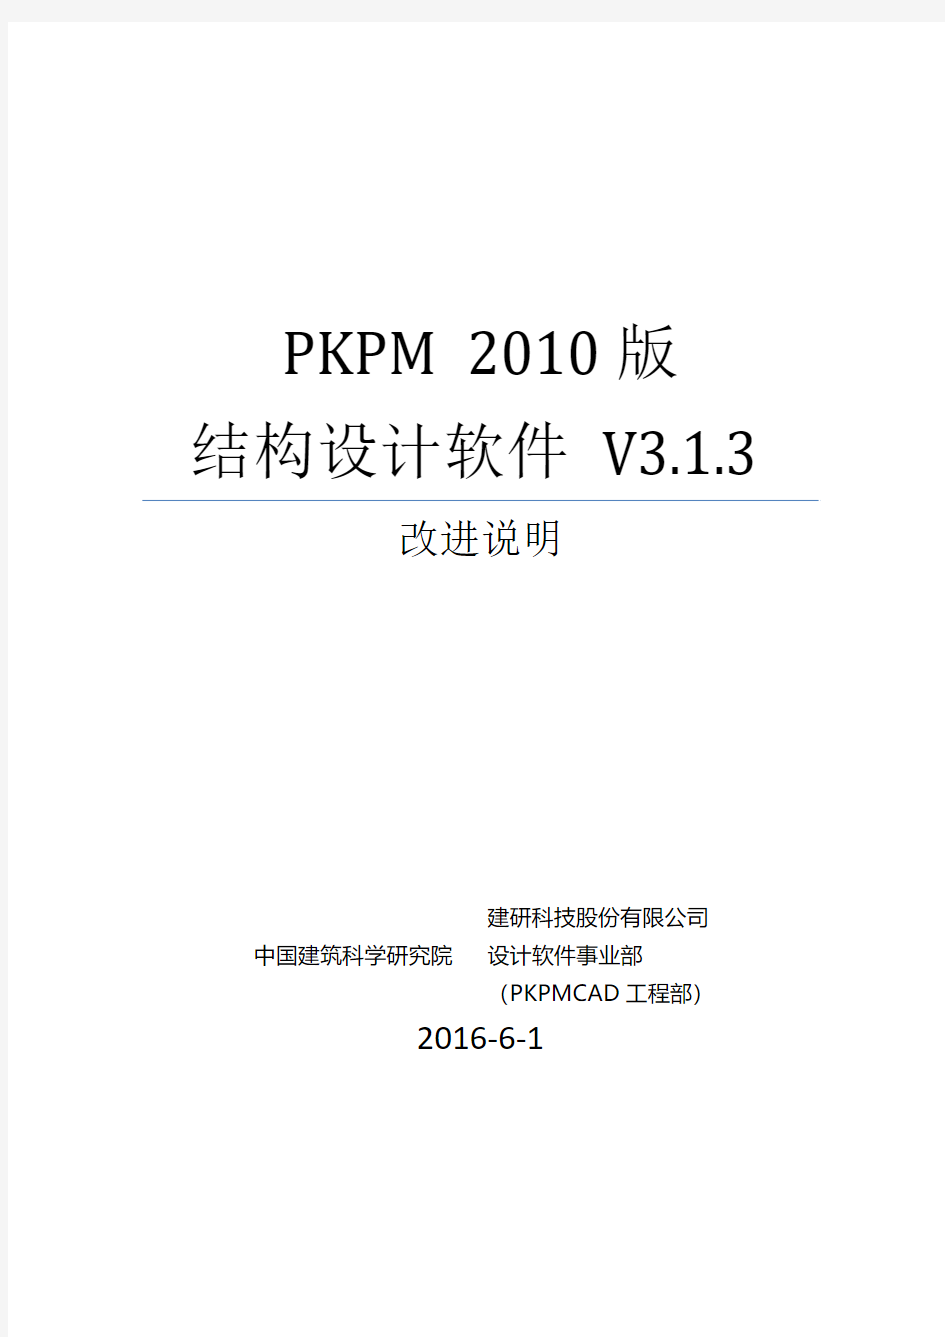 PKPM软件说明书-V3.1.3版